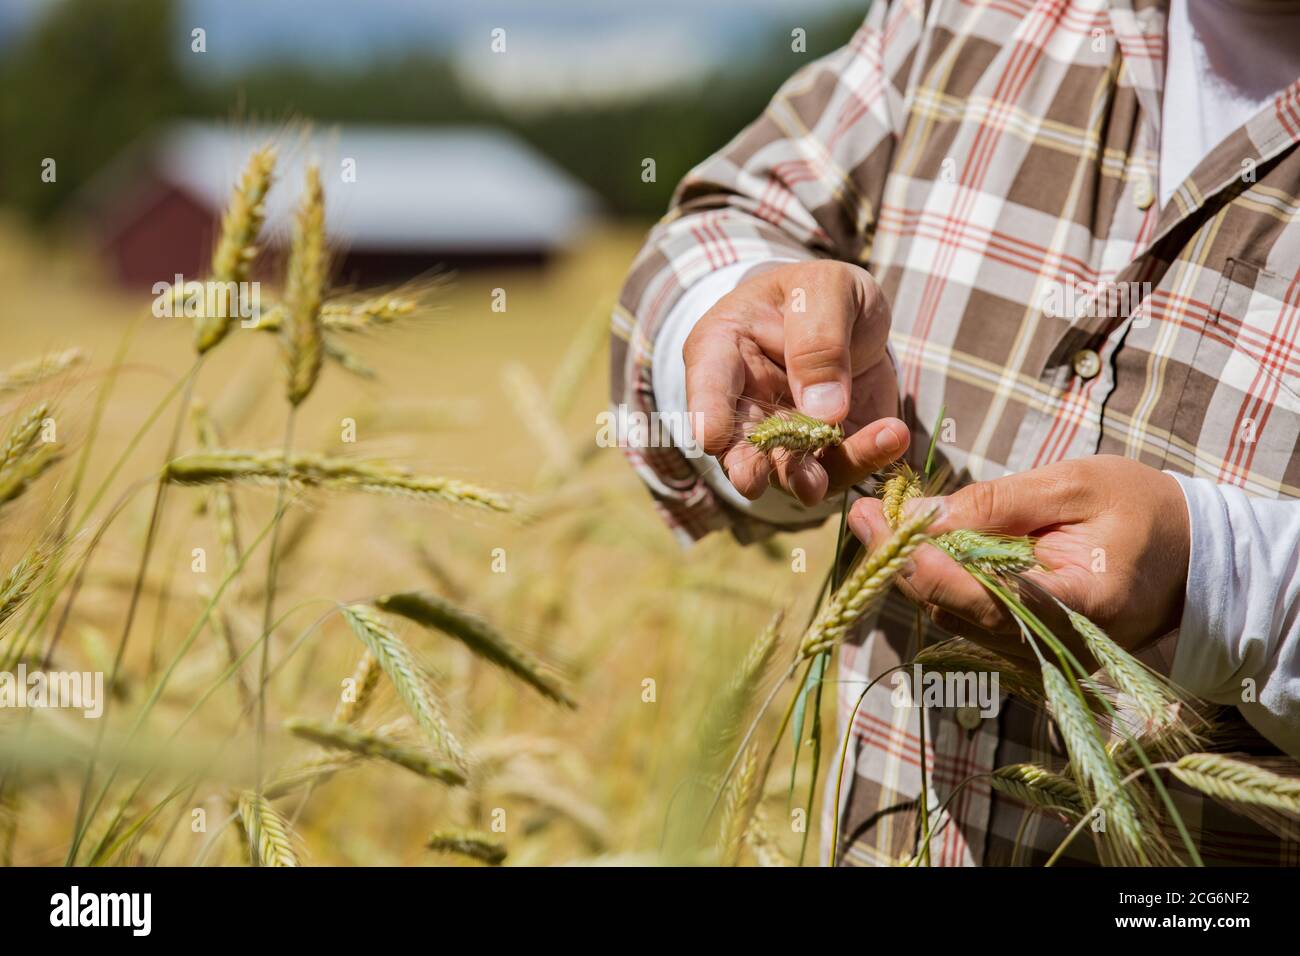 Ein Agronom, der die Qualität des Getreides überprüft, der in der steht Mitten in einem Roggenfeld Stockfoto